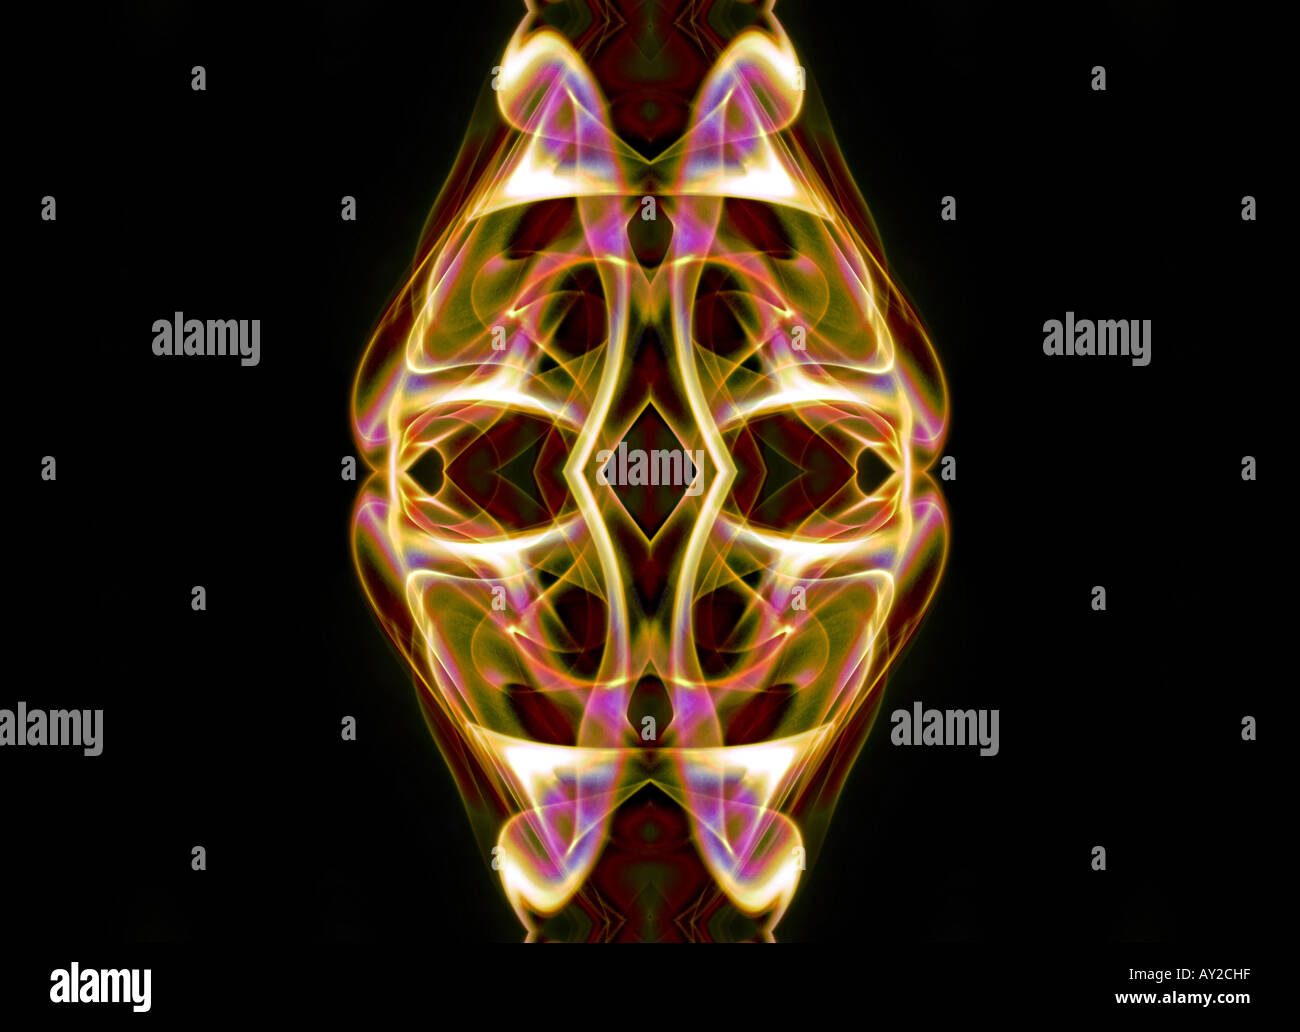 Kaleidoskop kaleidoskopischen Kunst künstlerisches Design Muster Formular Struktur Blumenmotiv Farbe Farbe horizontale schwarze gotische Detail illu Stockfoto